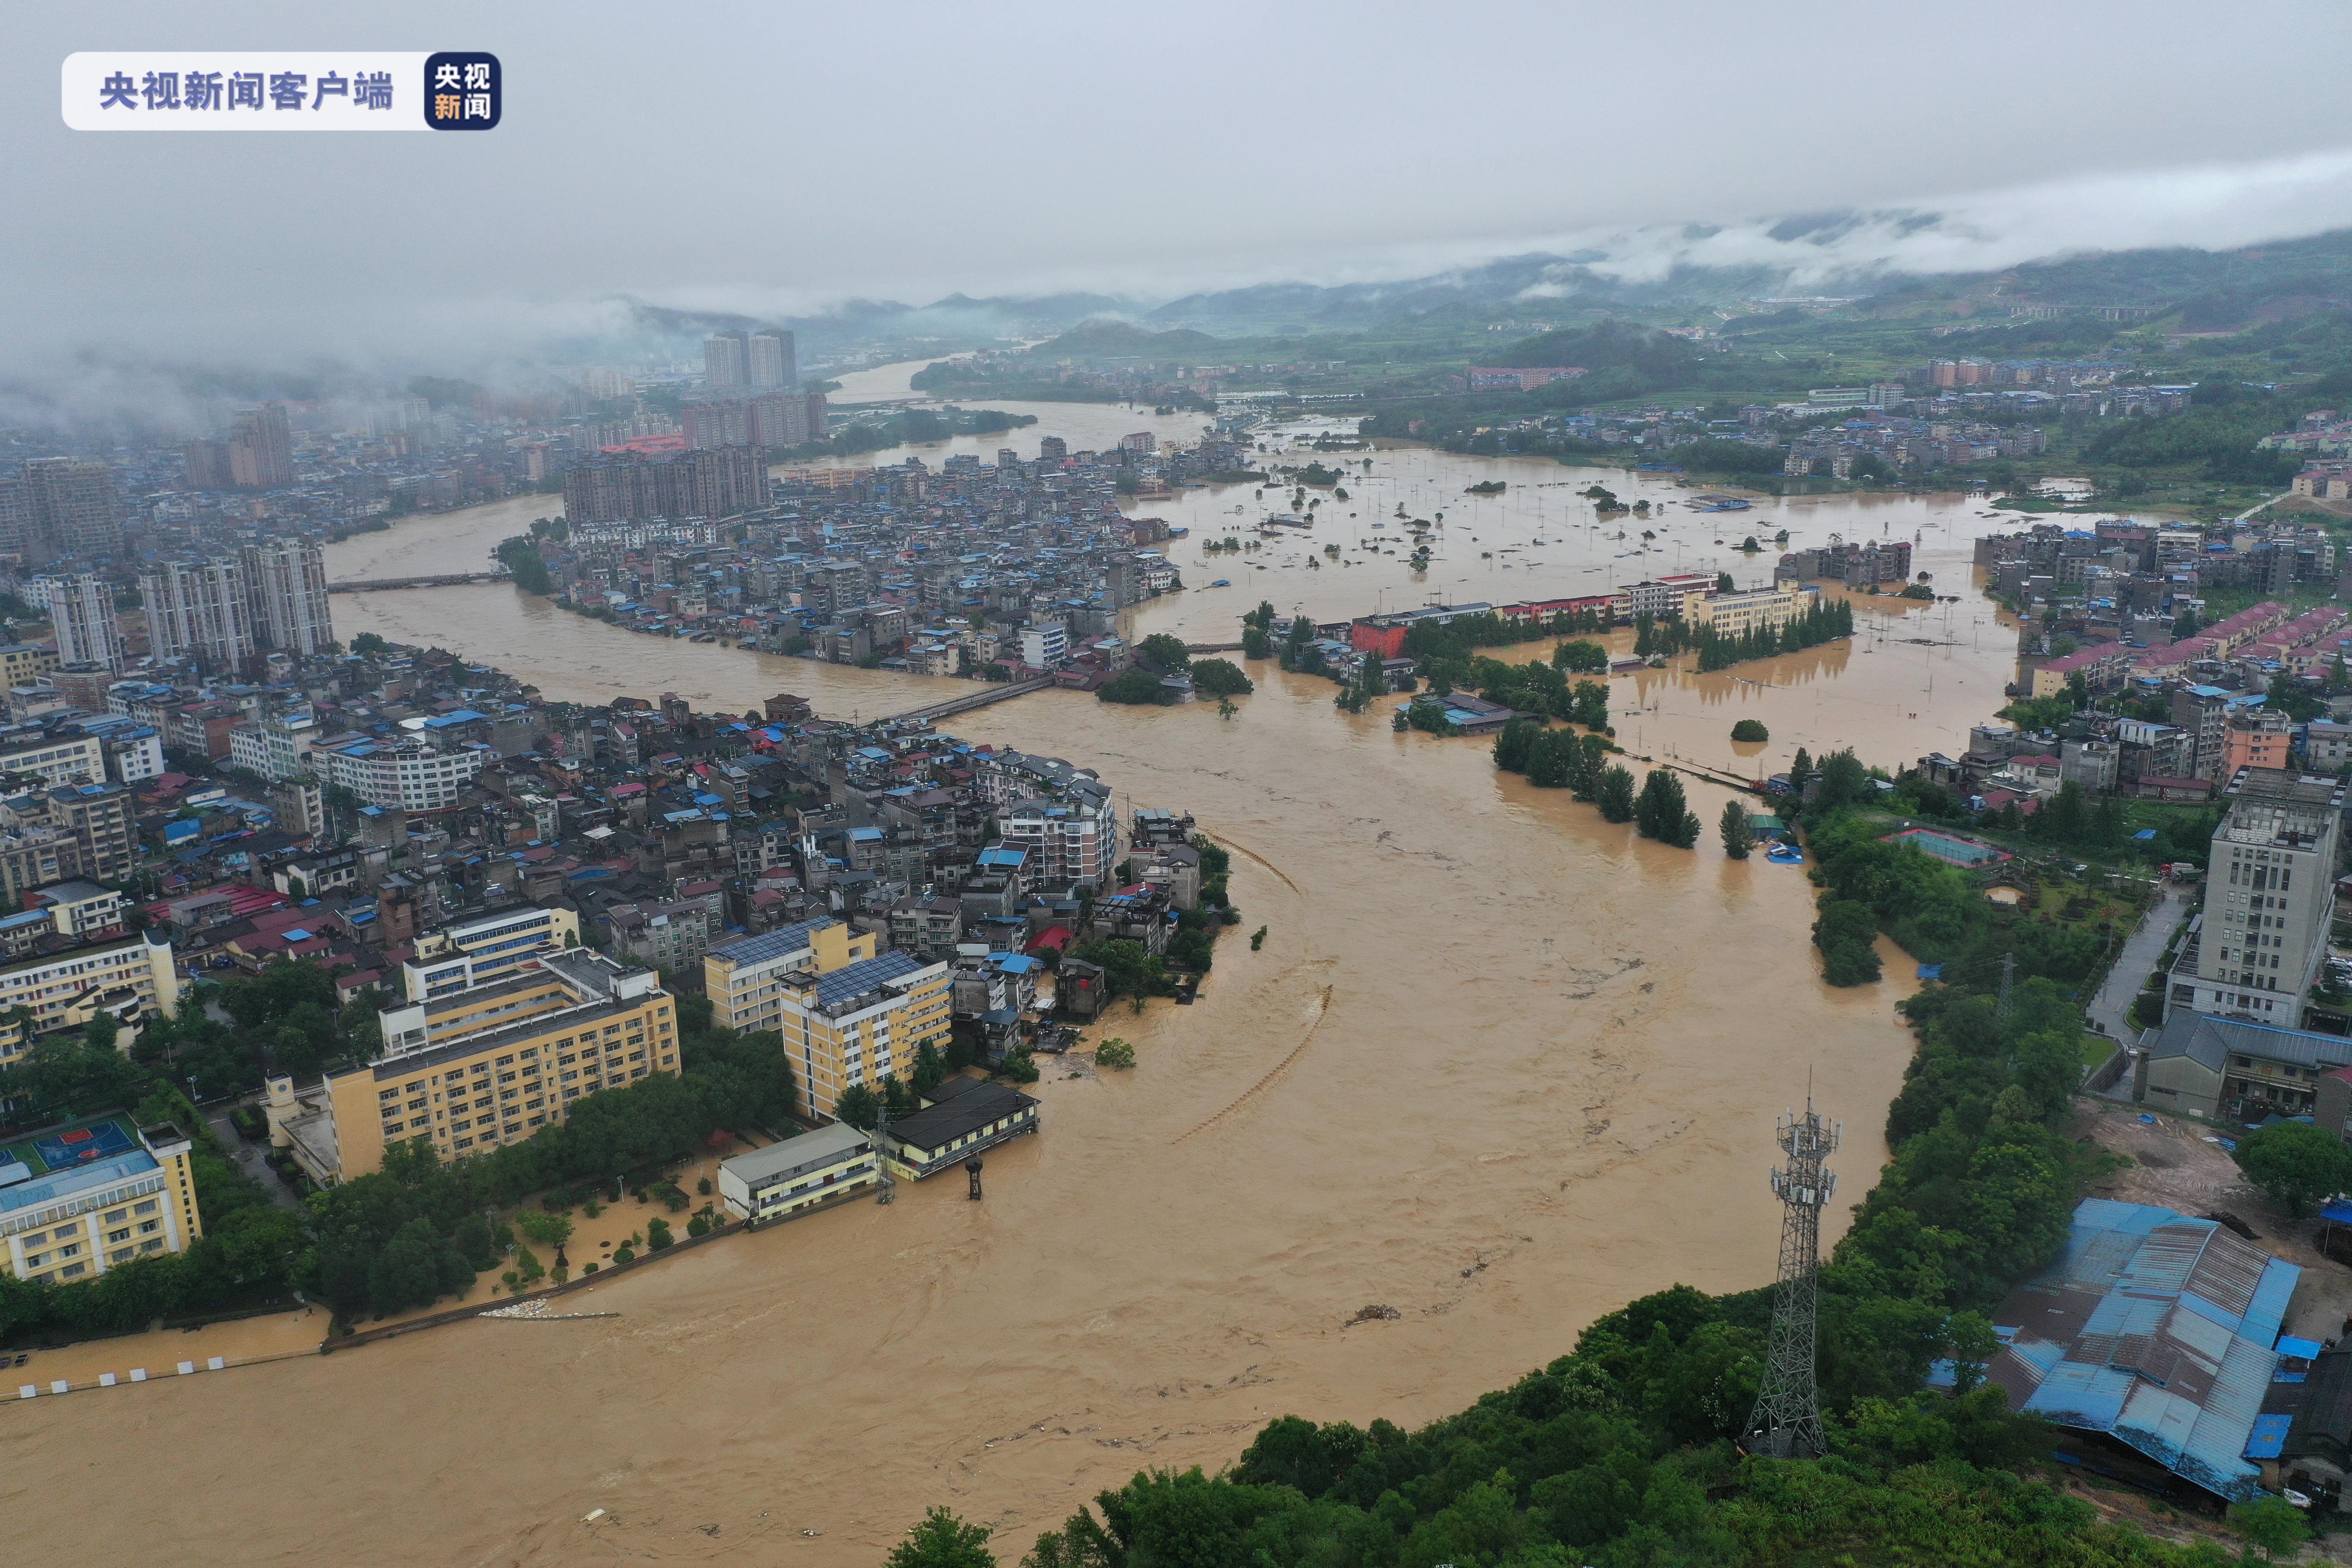 超过历史最高水位1.59米 福建松溪出现历史最大洪水